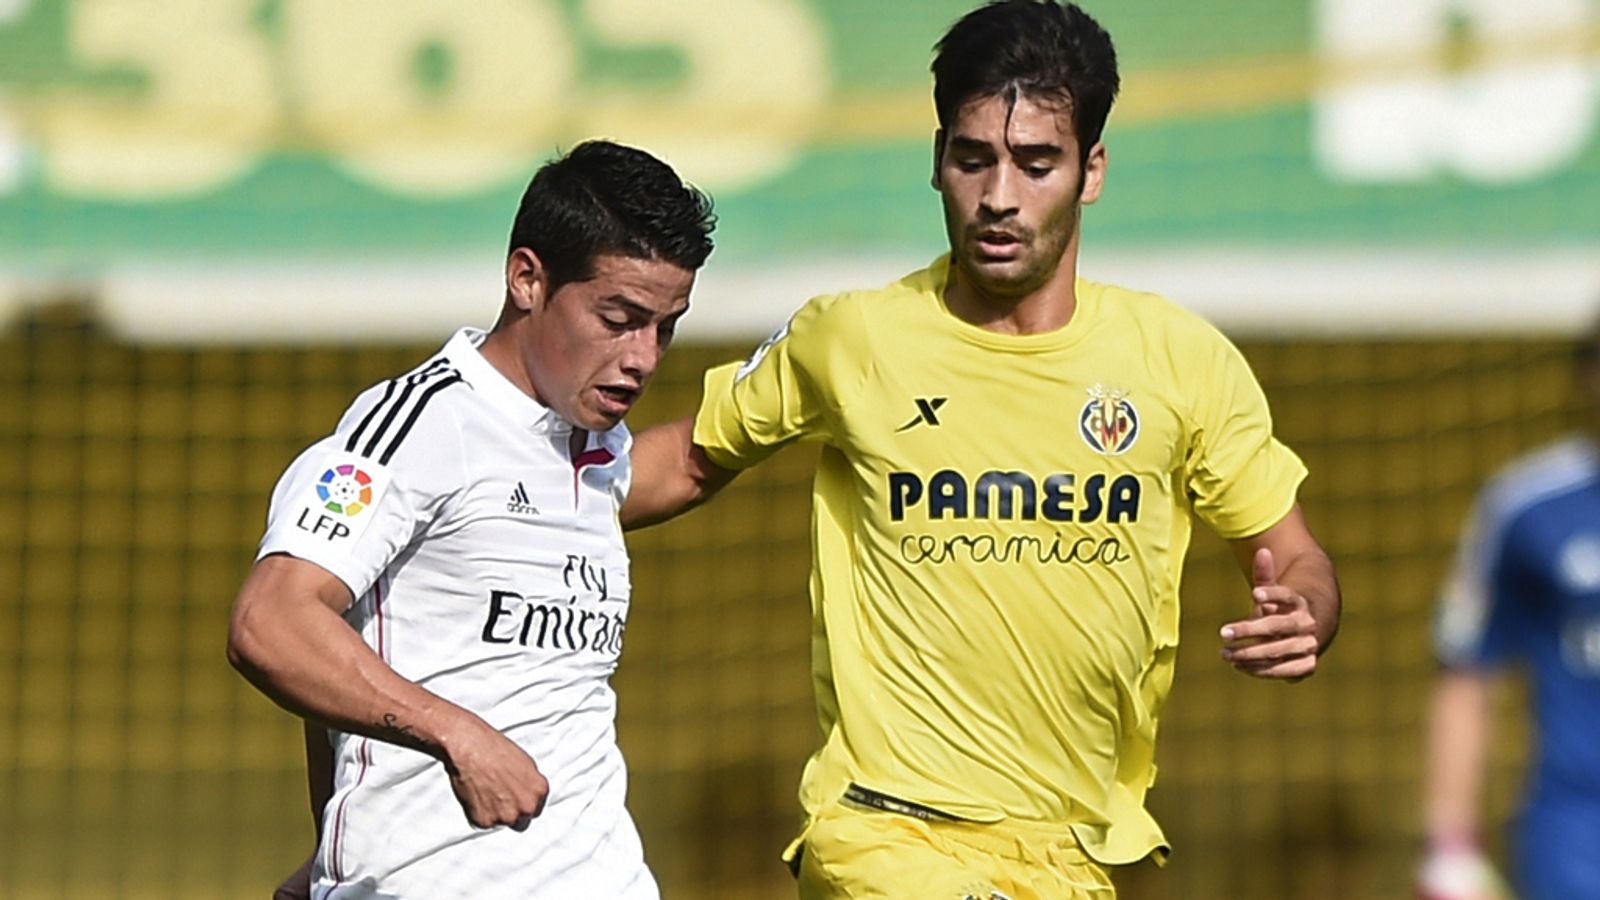 Villarreal 0 - 2 R Madrid - Match Report & Highlights